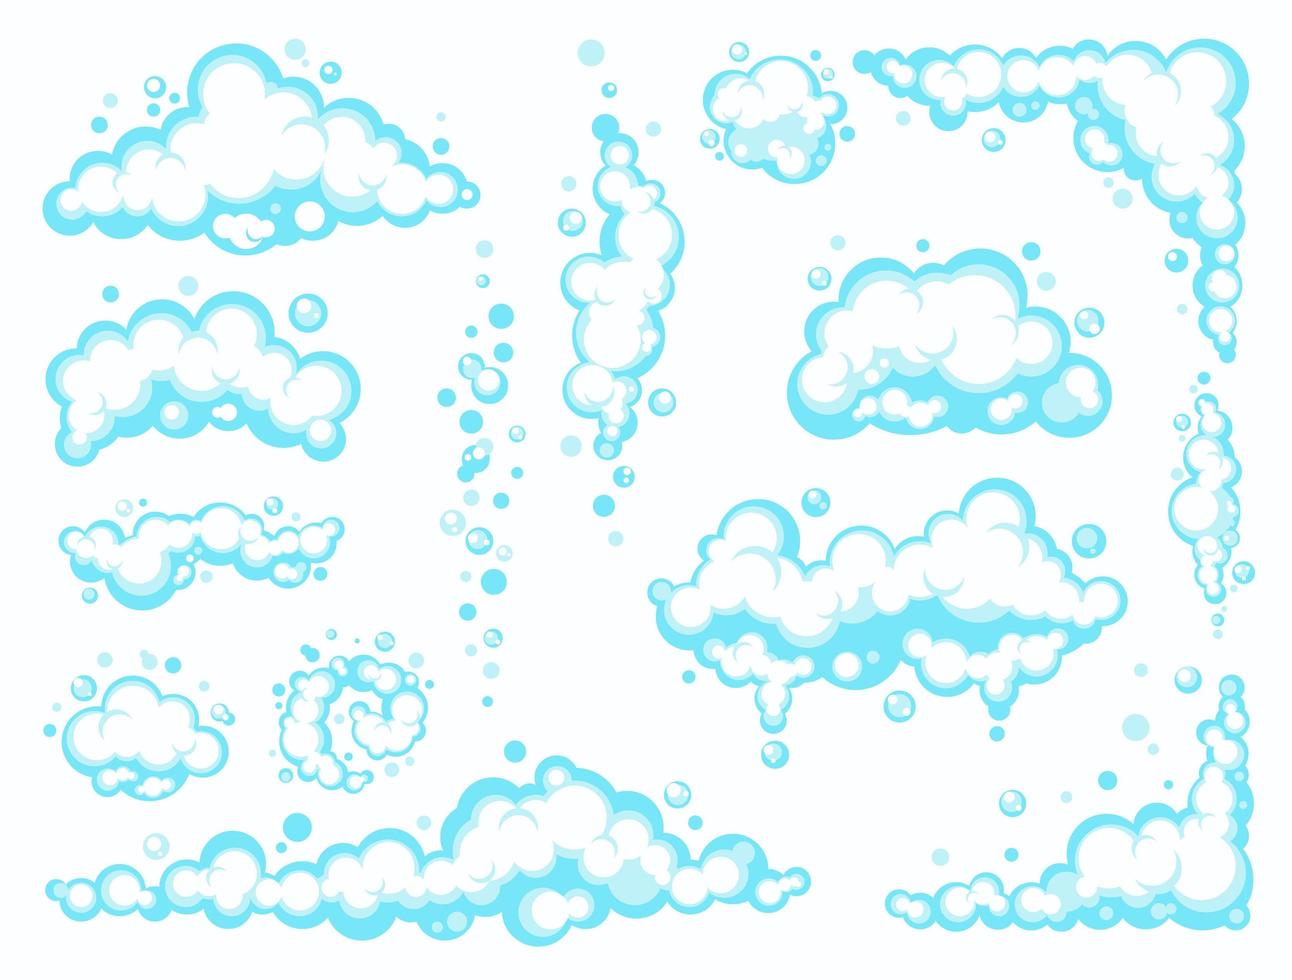 espuma de sabão dos desenhos animados com bolhas. espuma azul clara de banho, xampu, barbear, mousse. ilustração vetorial. eps 10 vetor